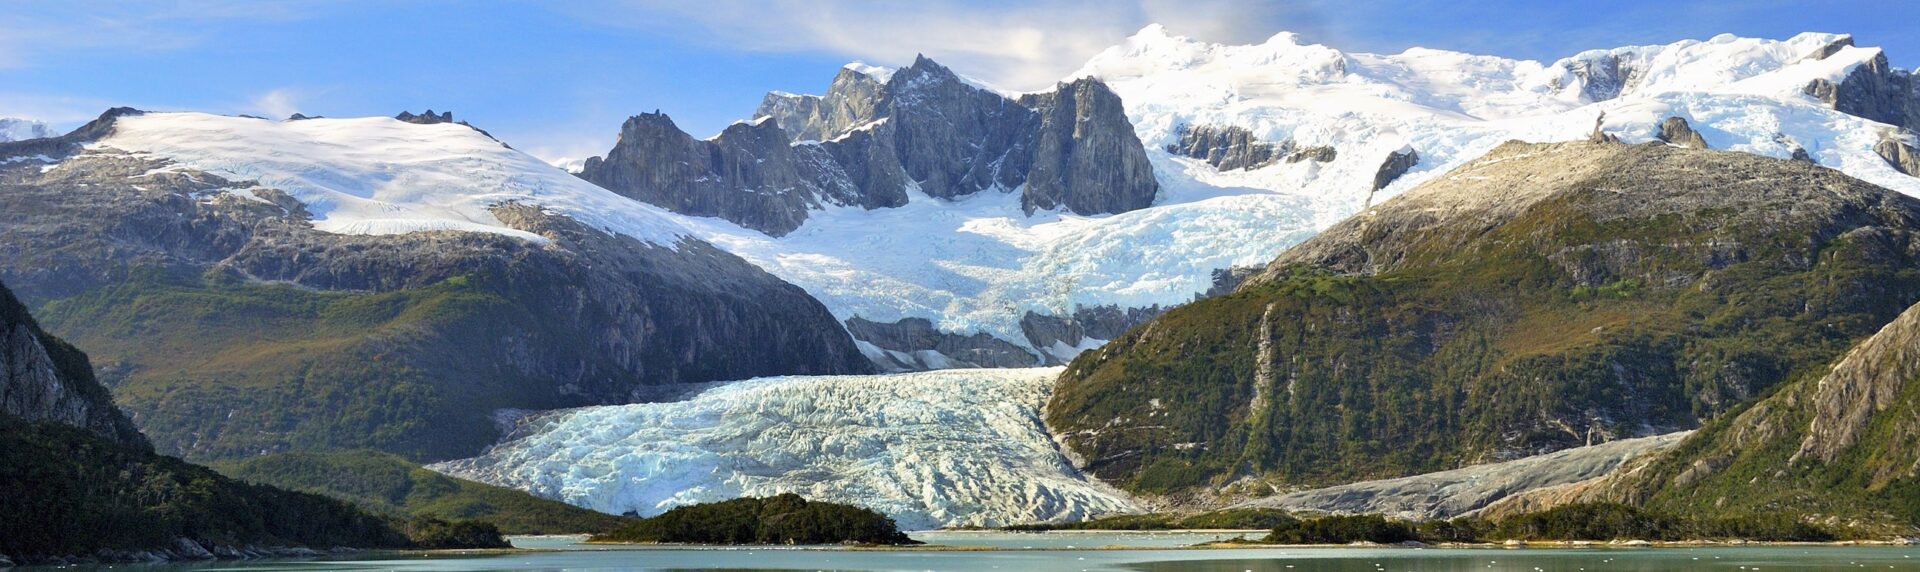 Chili Reizen Cruise Patagonie Pano1